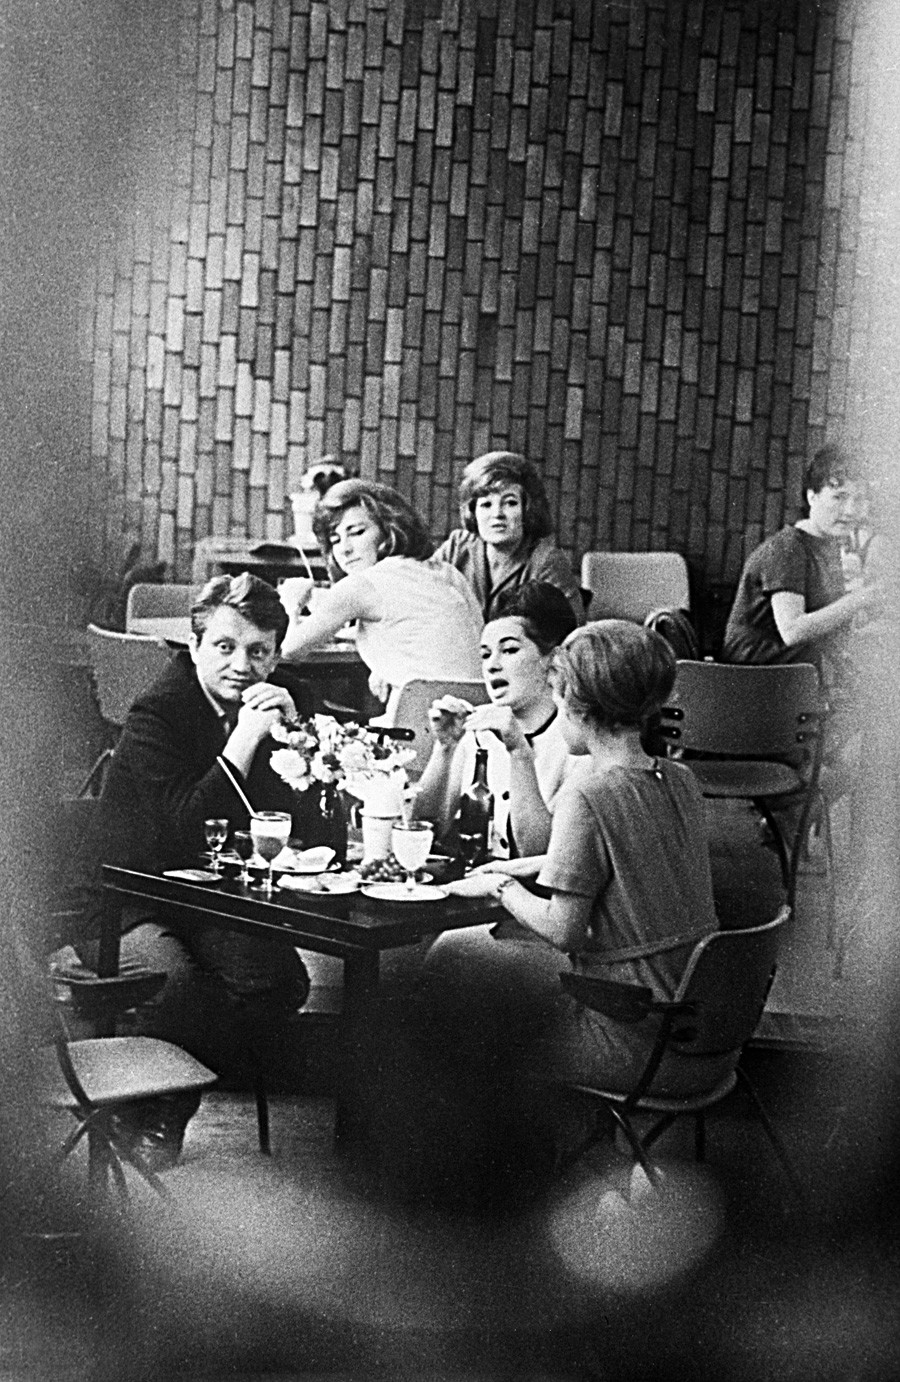 若者のためのコーヒー・ショップ「青い鳥」にて。1964年。